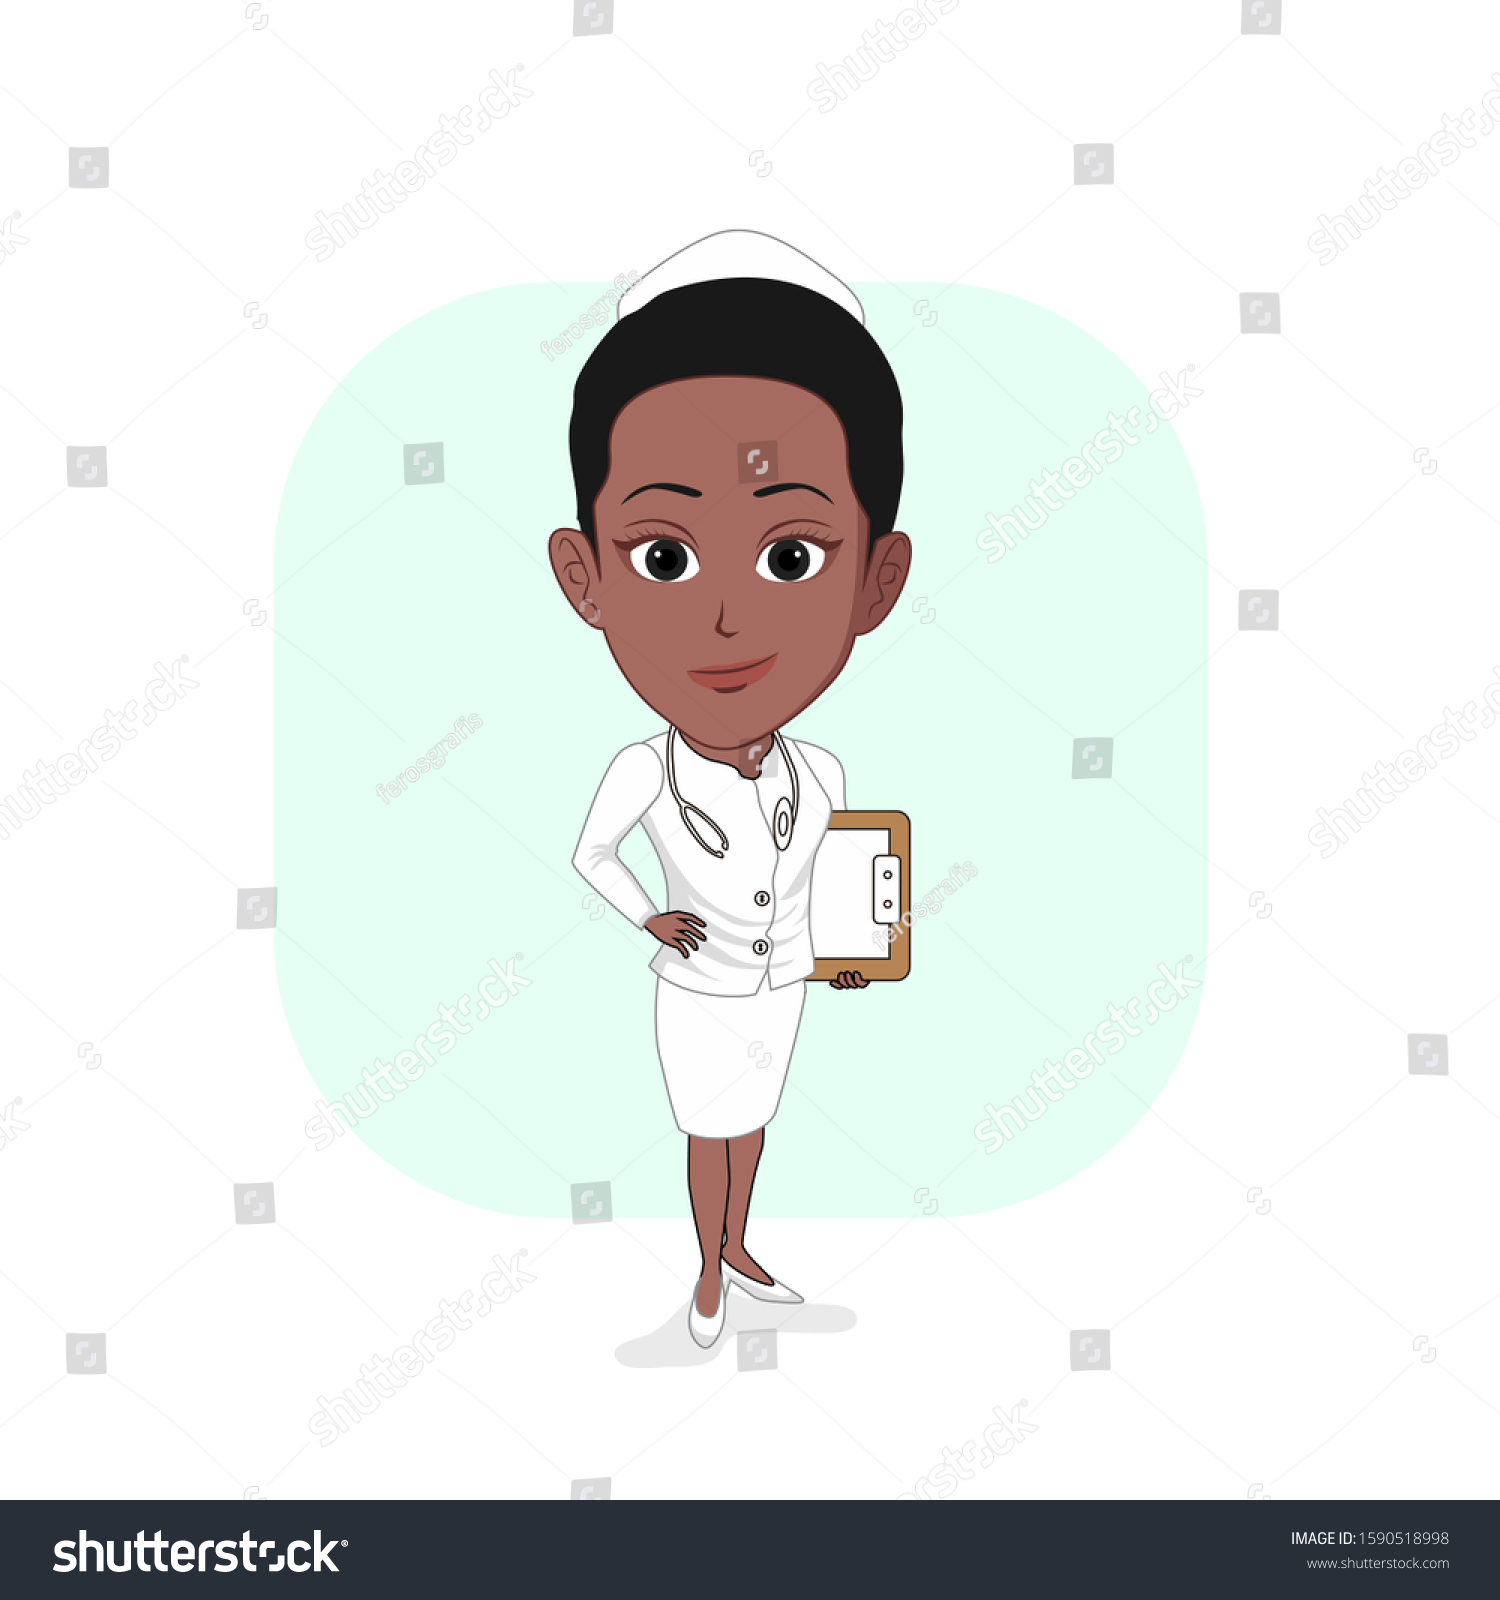 Cartoon Vector Illustration Black Female Nurse Stock Vector Royalty Free 1590518998 Shutterstock 